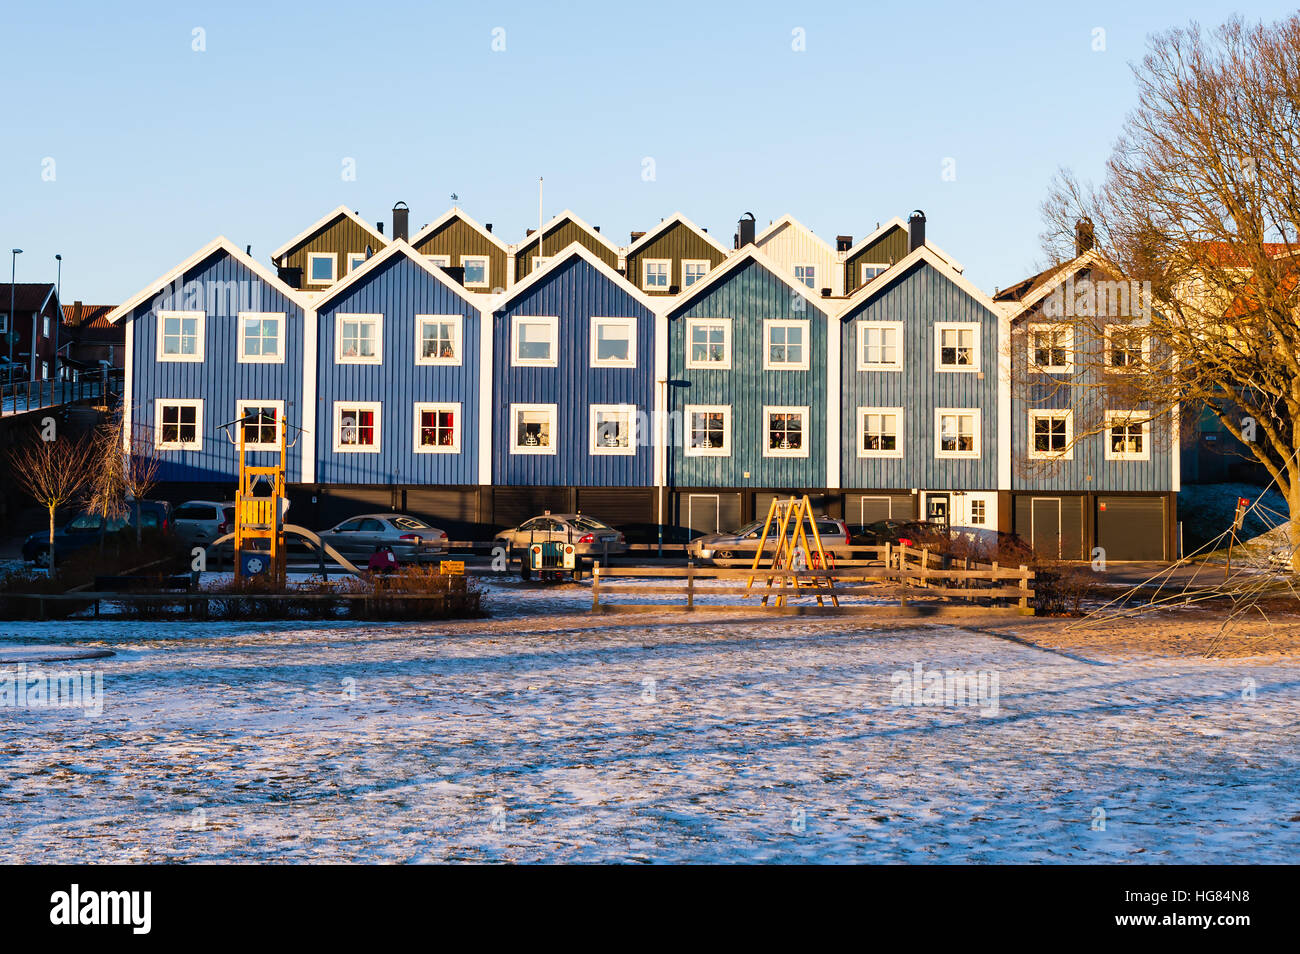 Karlskrona, Suecia - 5 de enero de 2017: documental sueco de un estilo de vida urbano. Casas al lado de la otra en tonos de azul. Parque de juegos fuera y algo de nieve o Foto de stock